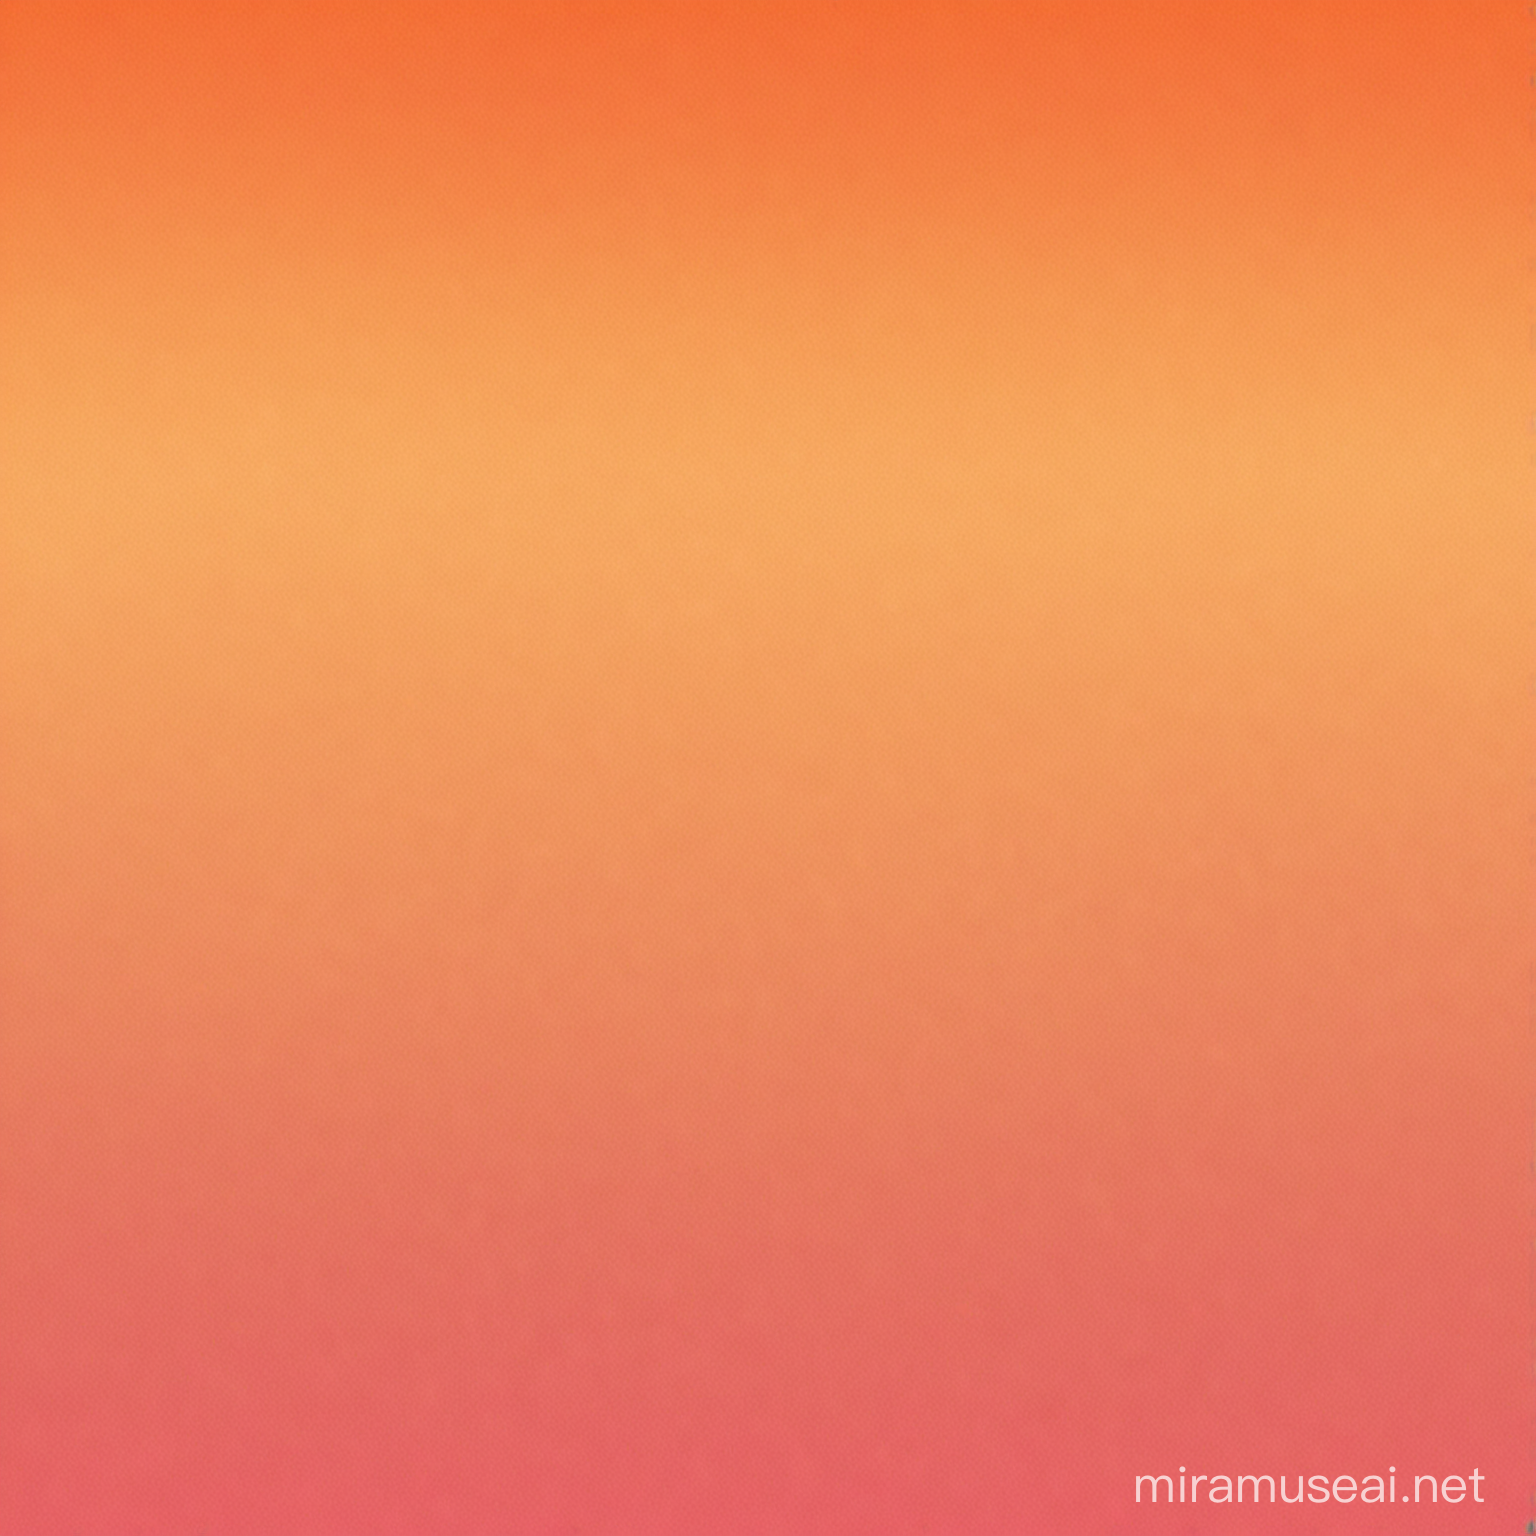 Orange gradient background 